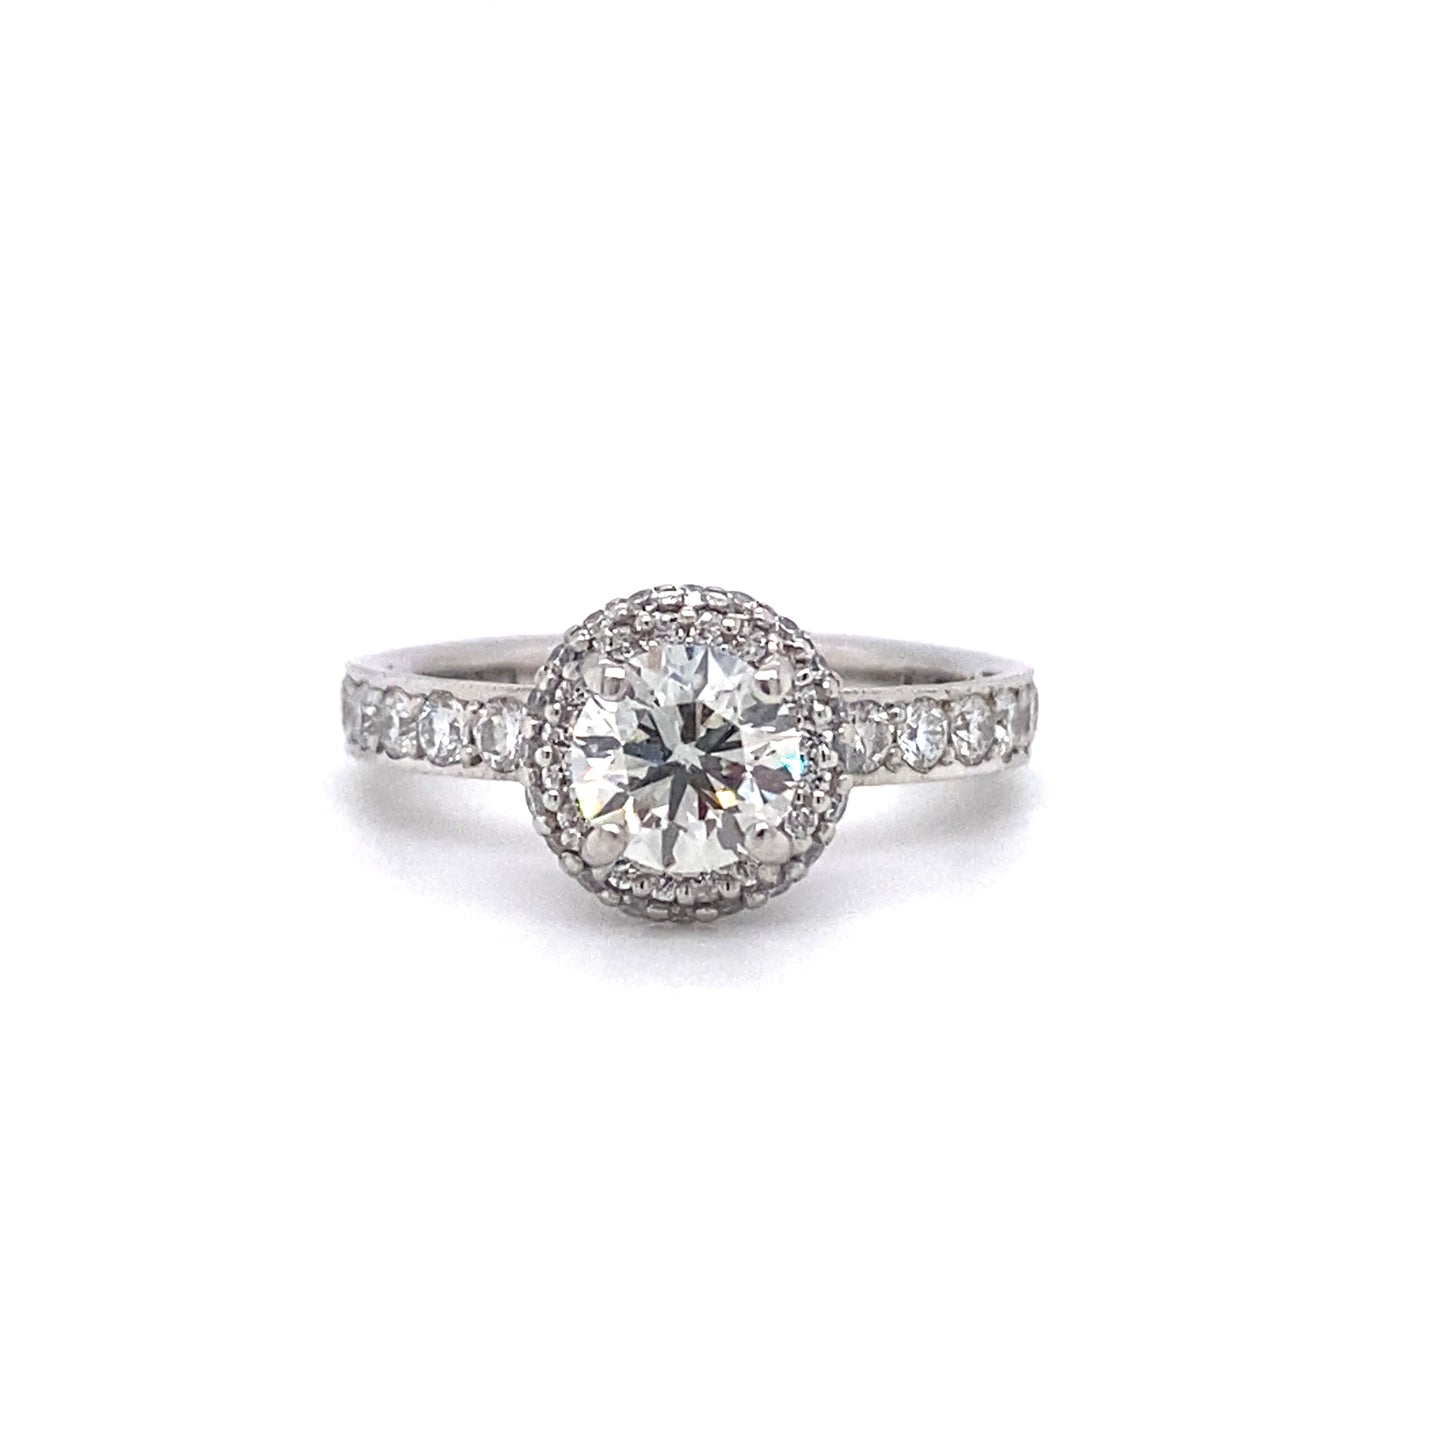 Tacori 0.65 Carat Diamond Engagement Ring in Platinum